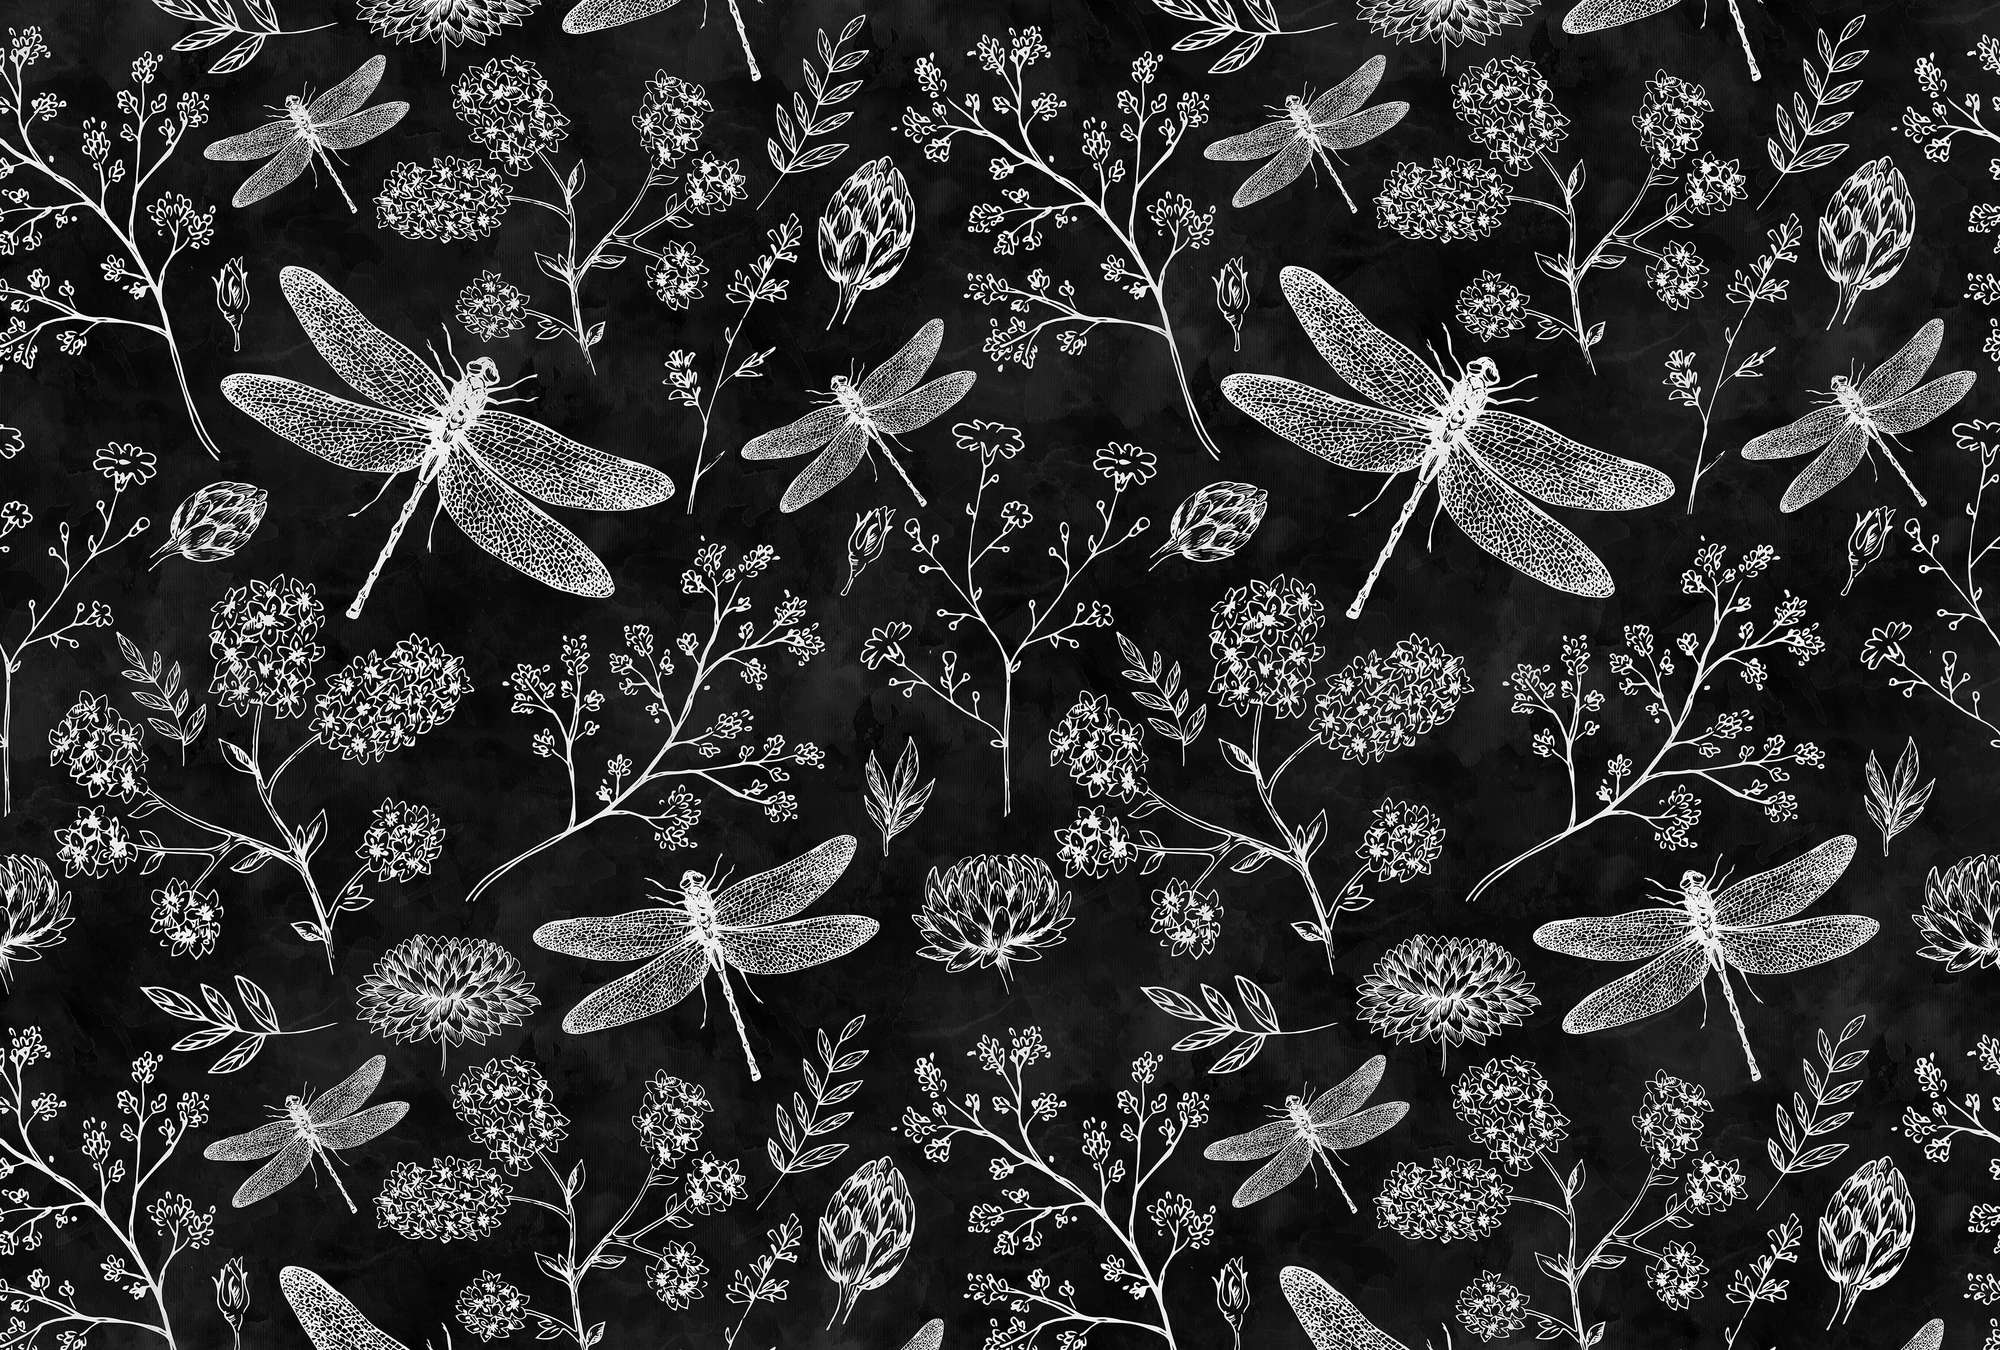             Schwarz-Weiß Fototapete Libellen & Blumen
        